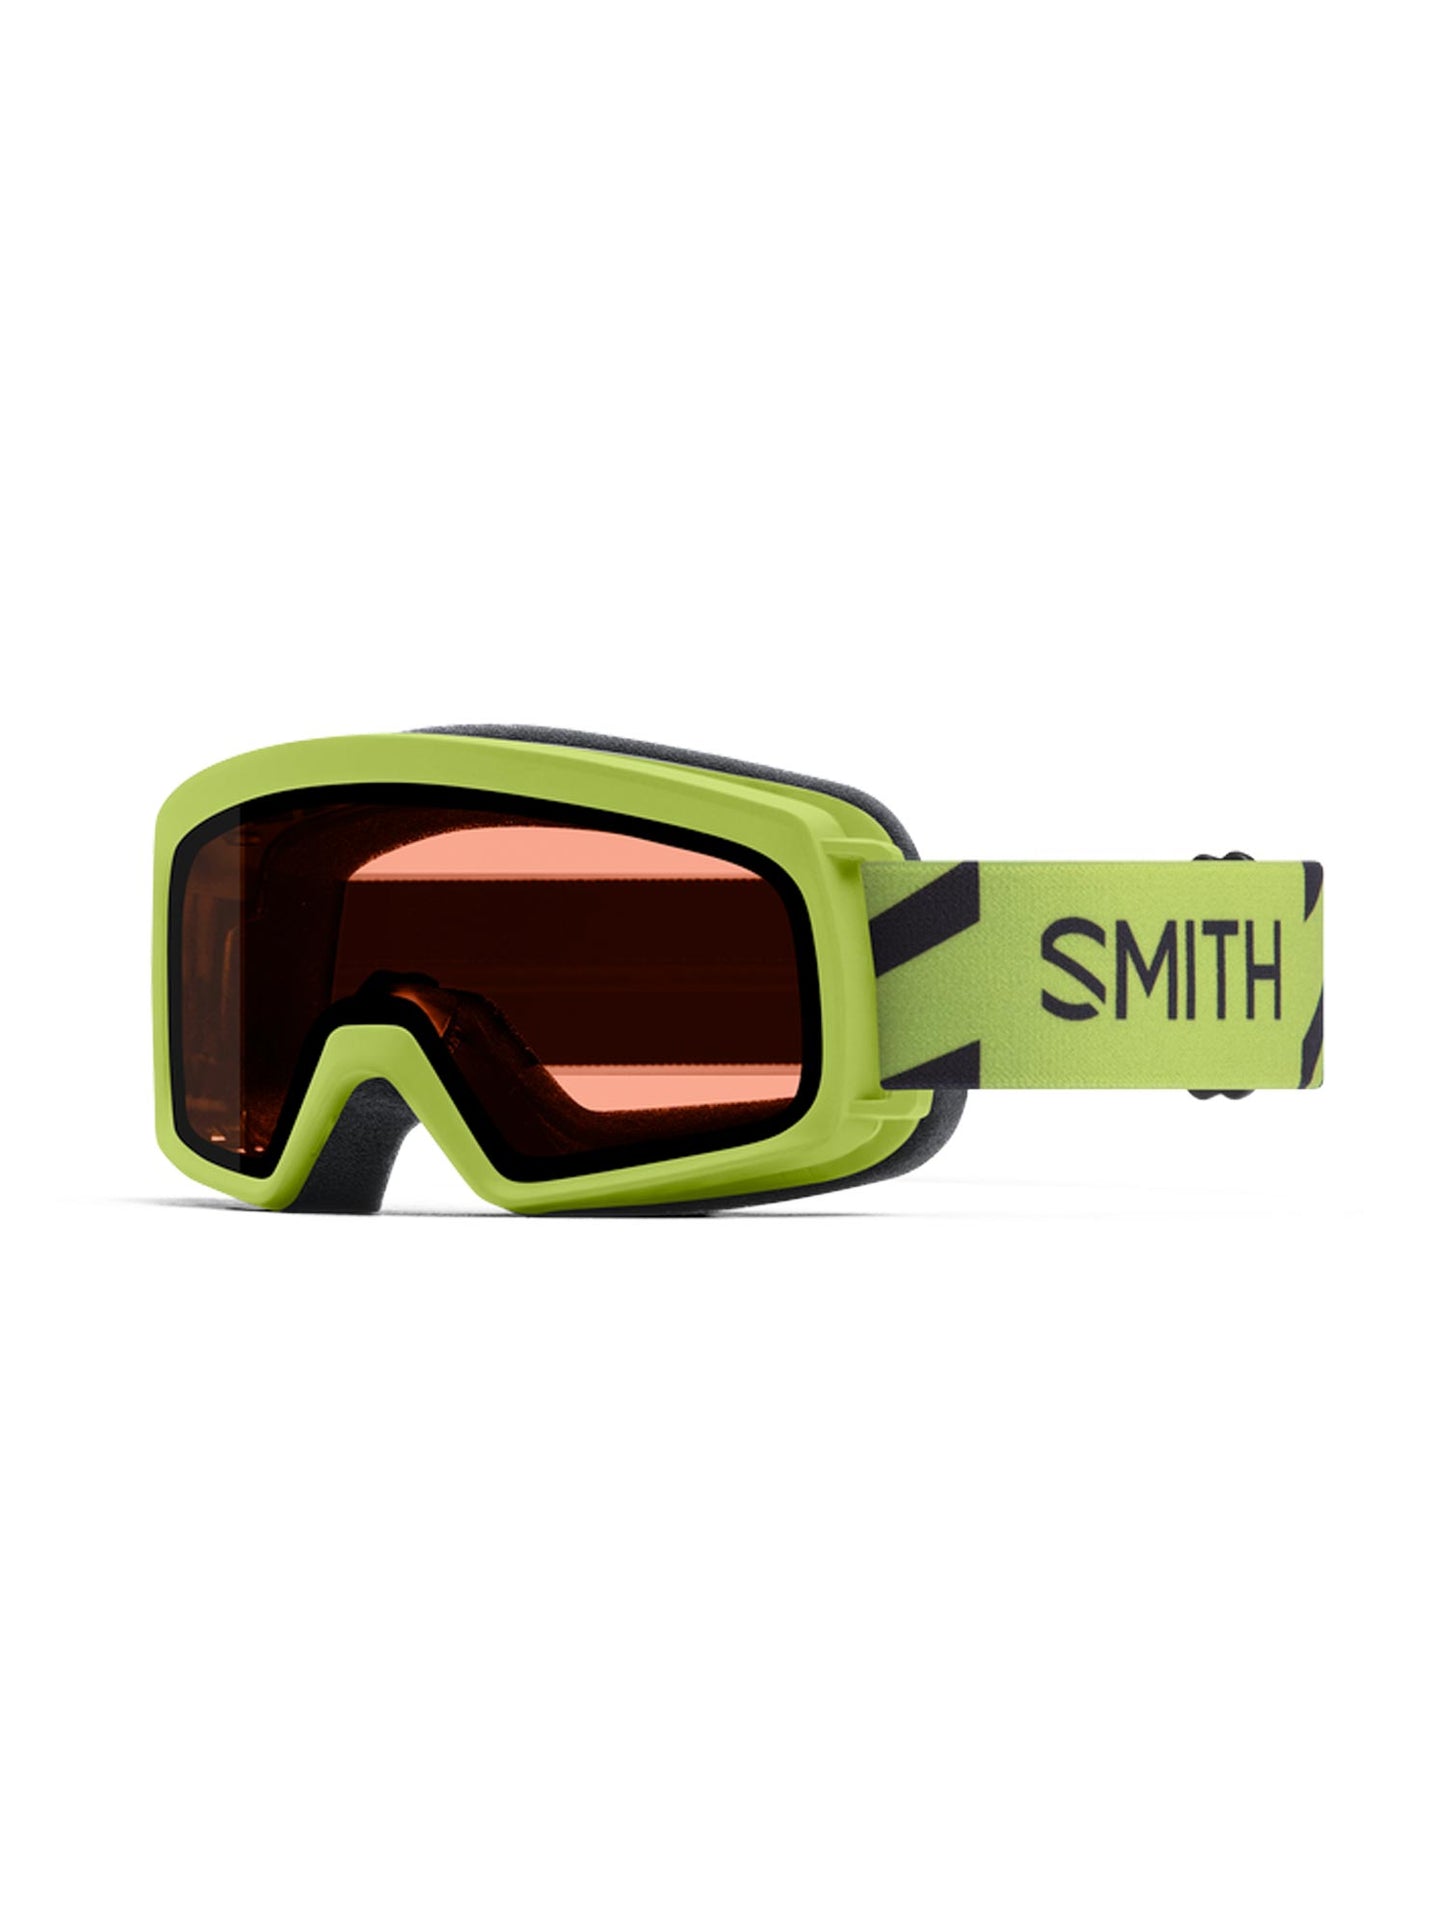 Smith Rascal ski goggles, lime green